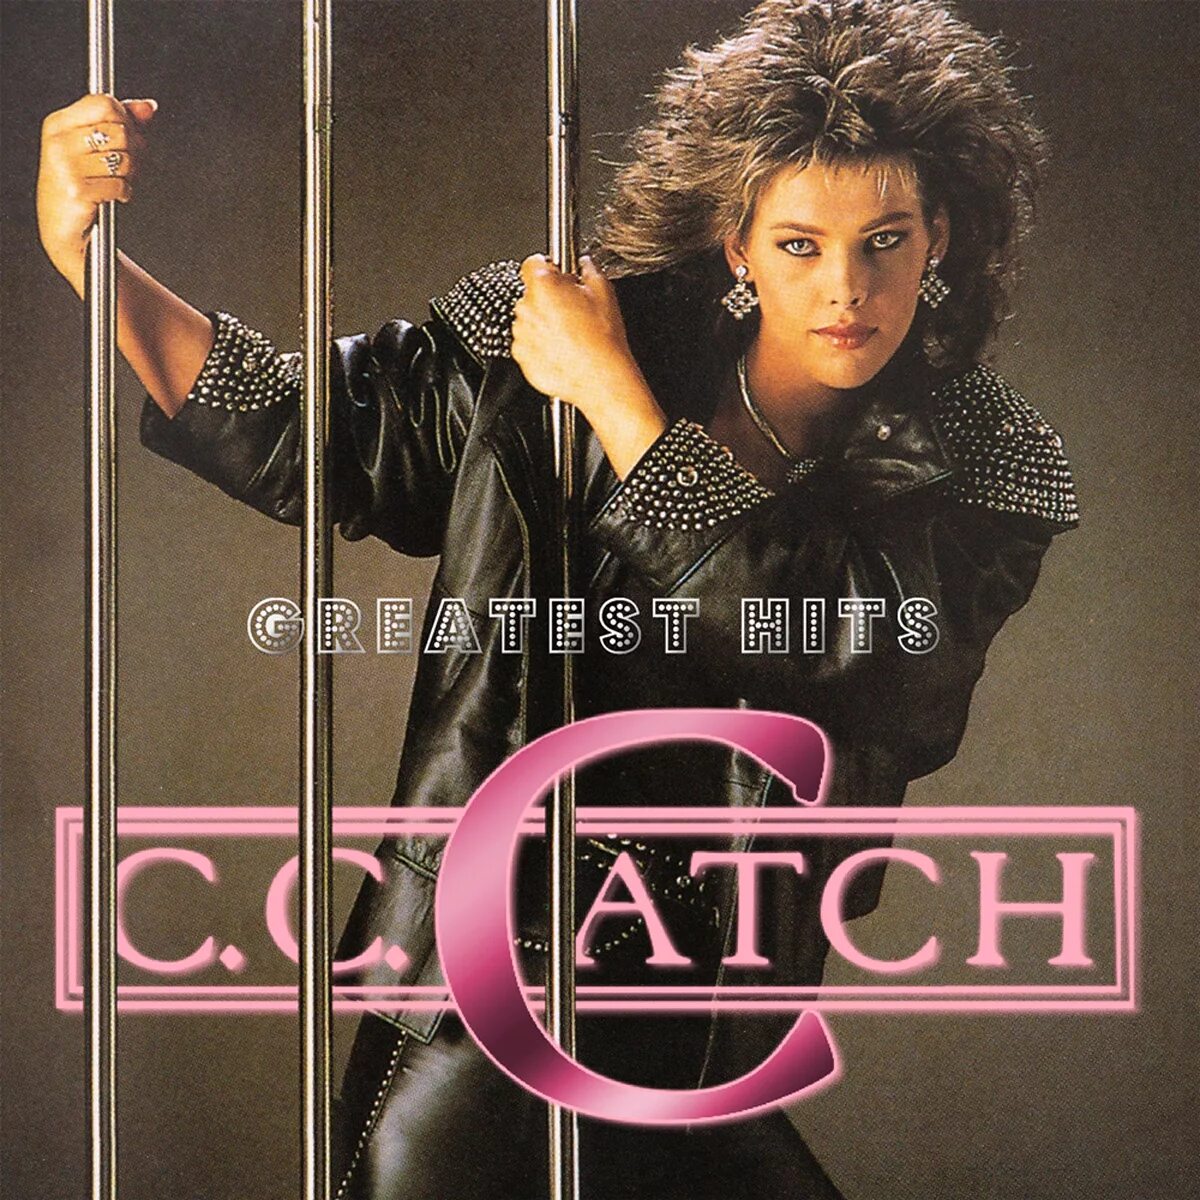 C C catch обложки альбомов. C C catch 1990. Cc catch CD. Cc catch оболочки альбомов. C c catch i can